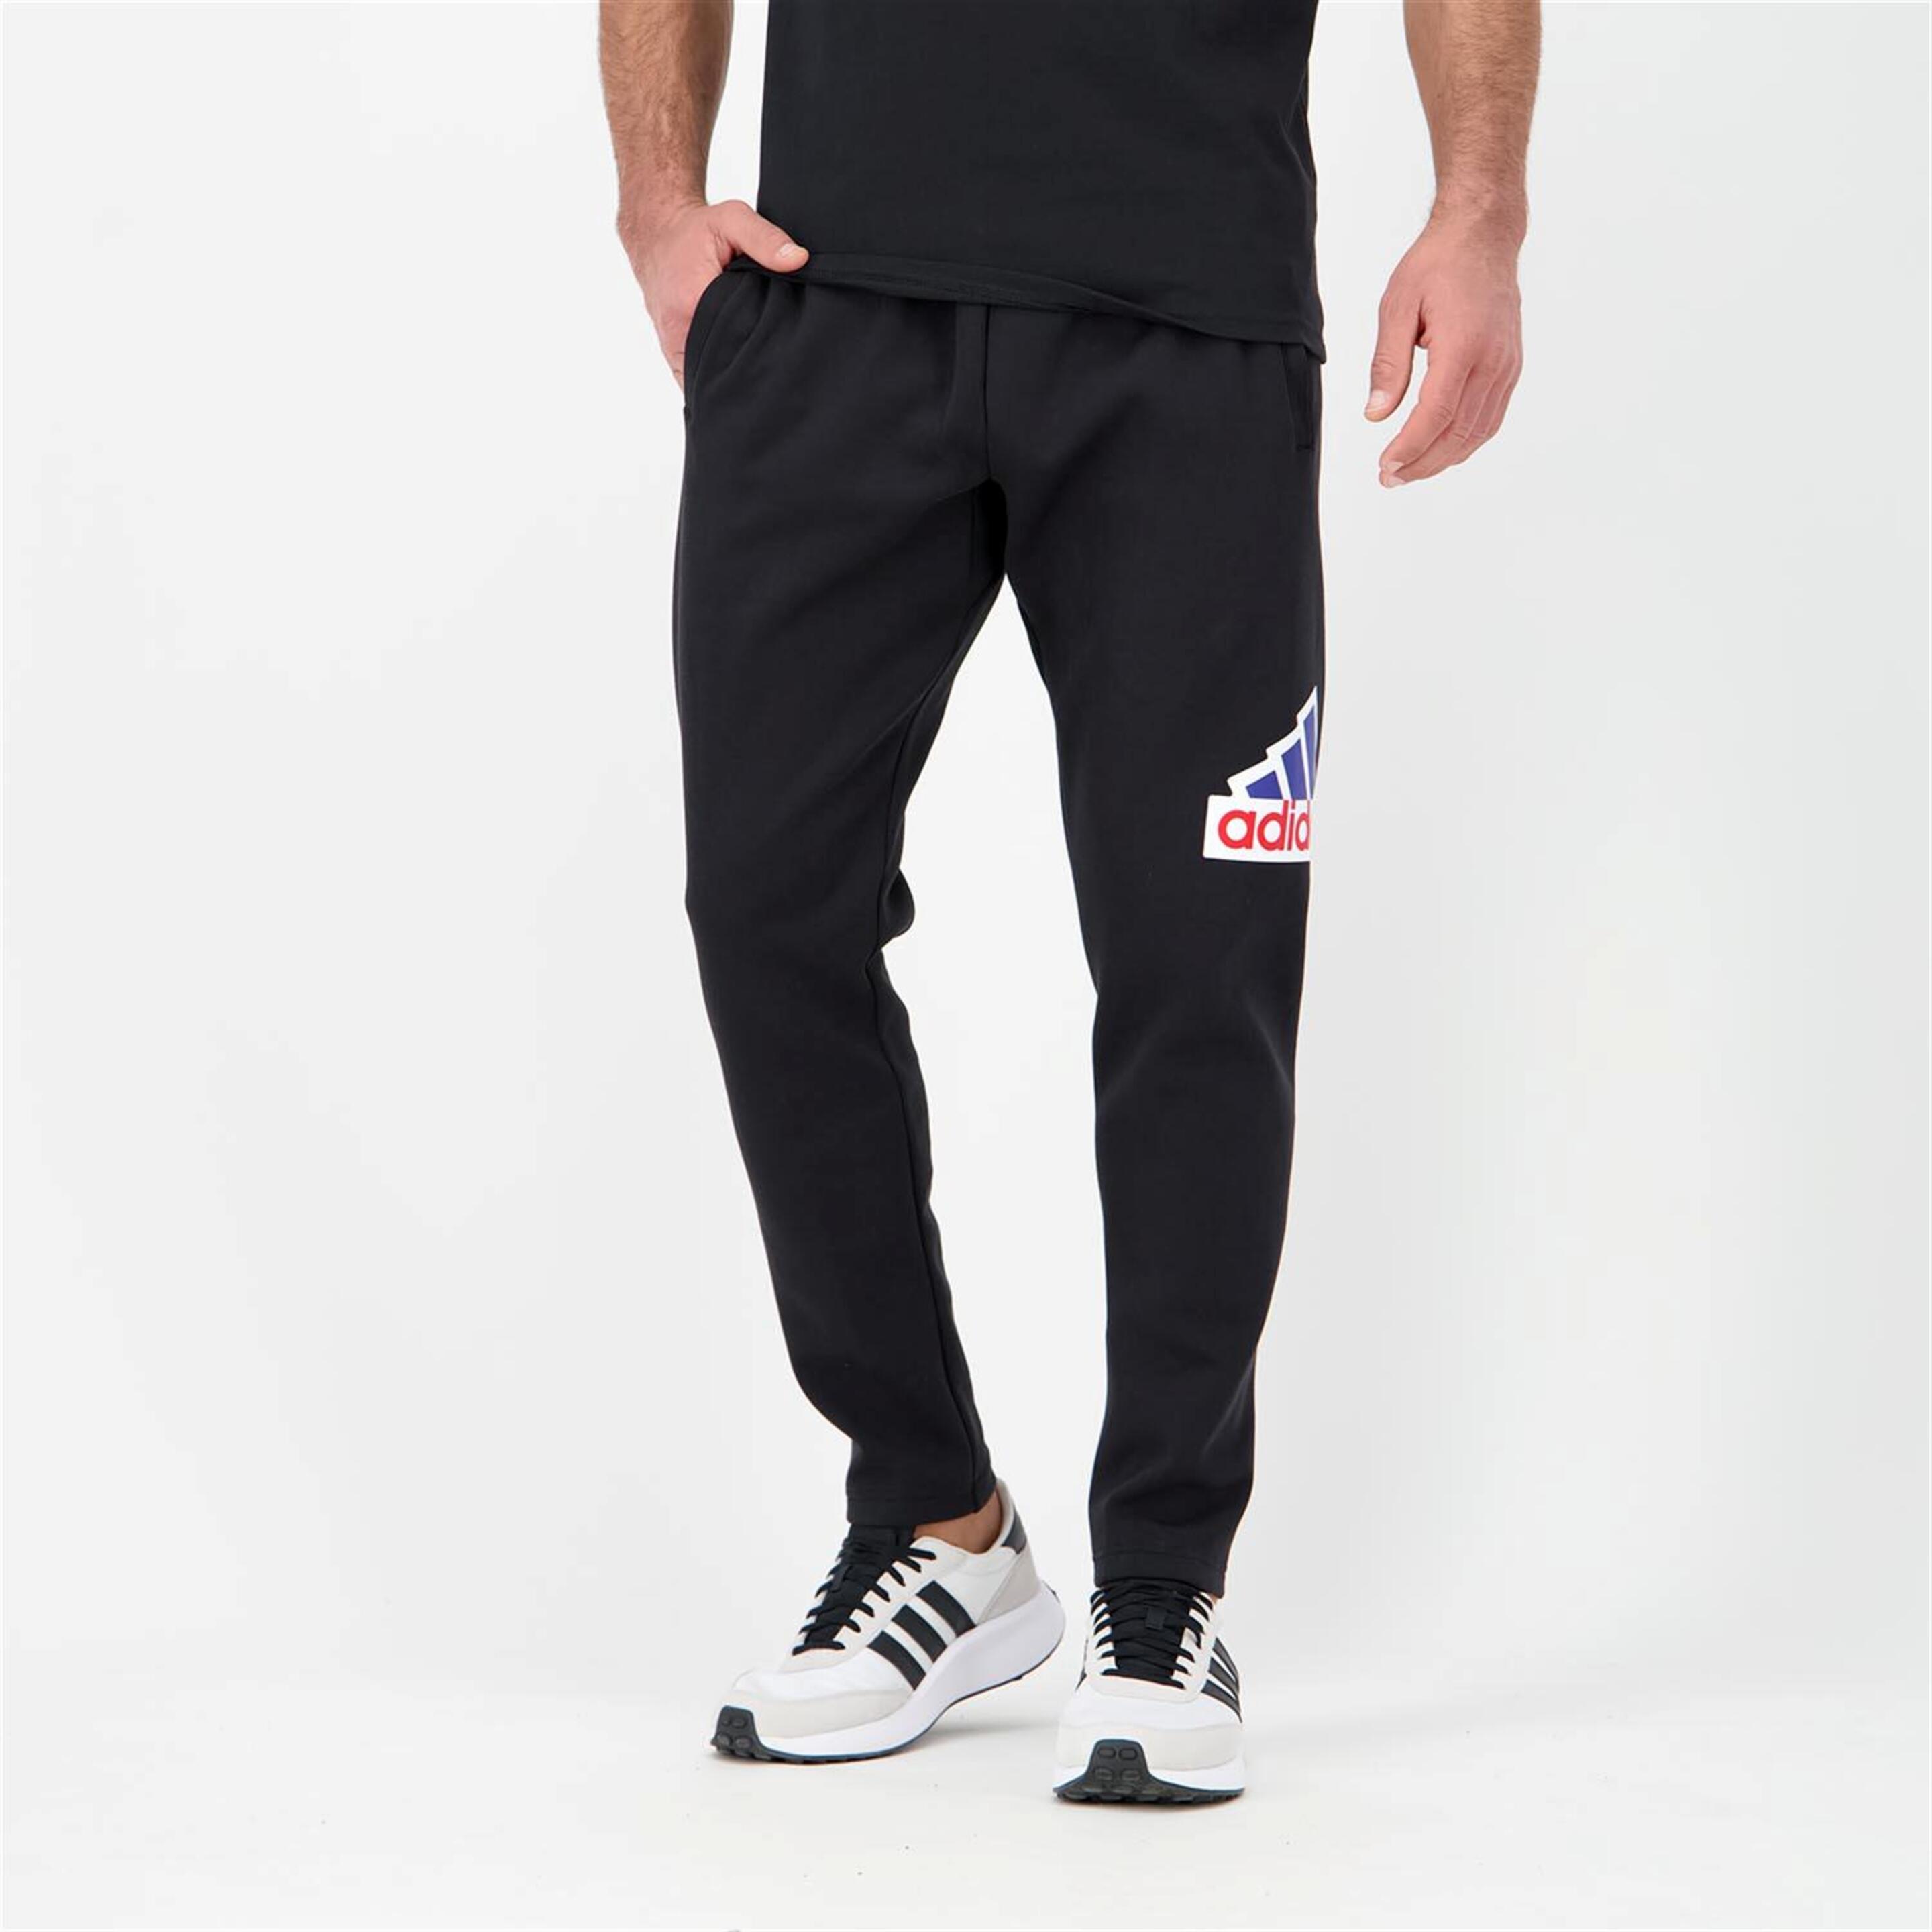 adidas Oly - Negro - Pantalón Hombre  | Sprinter